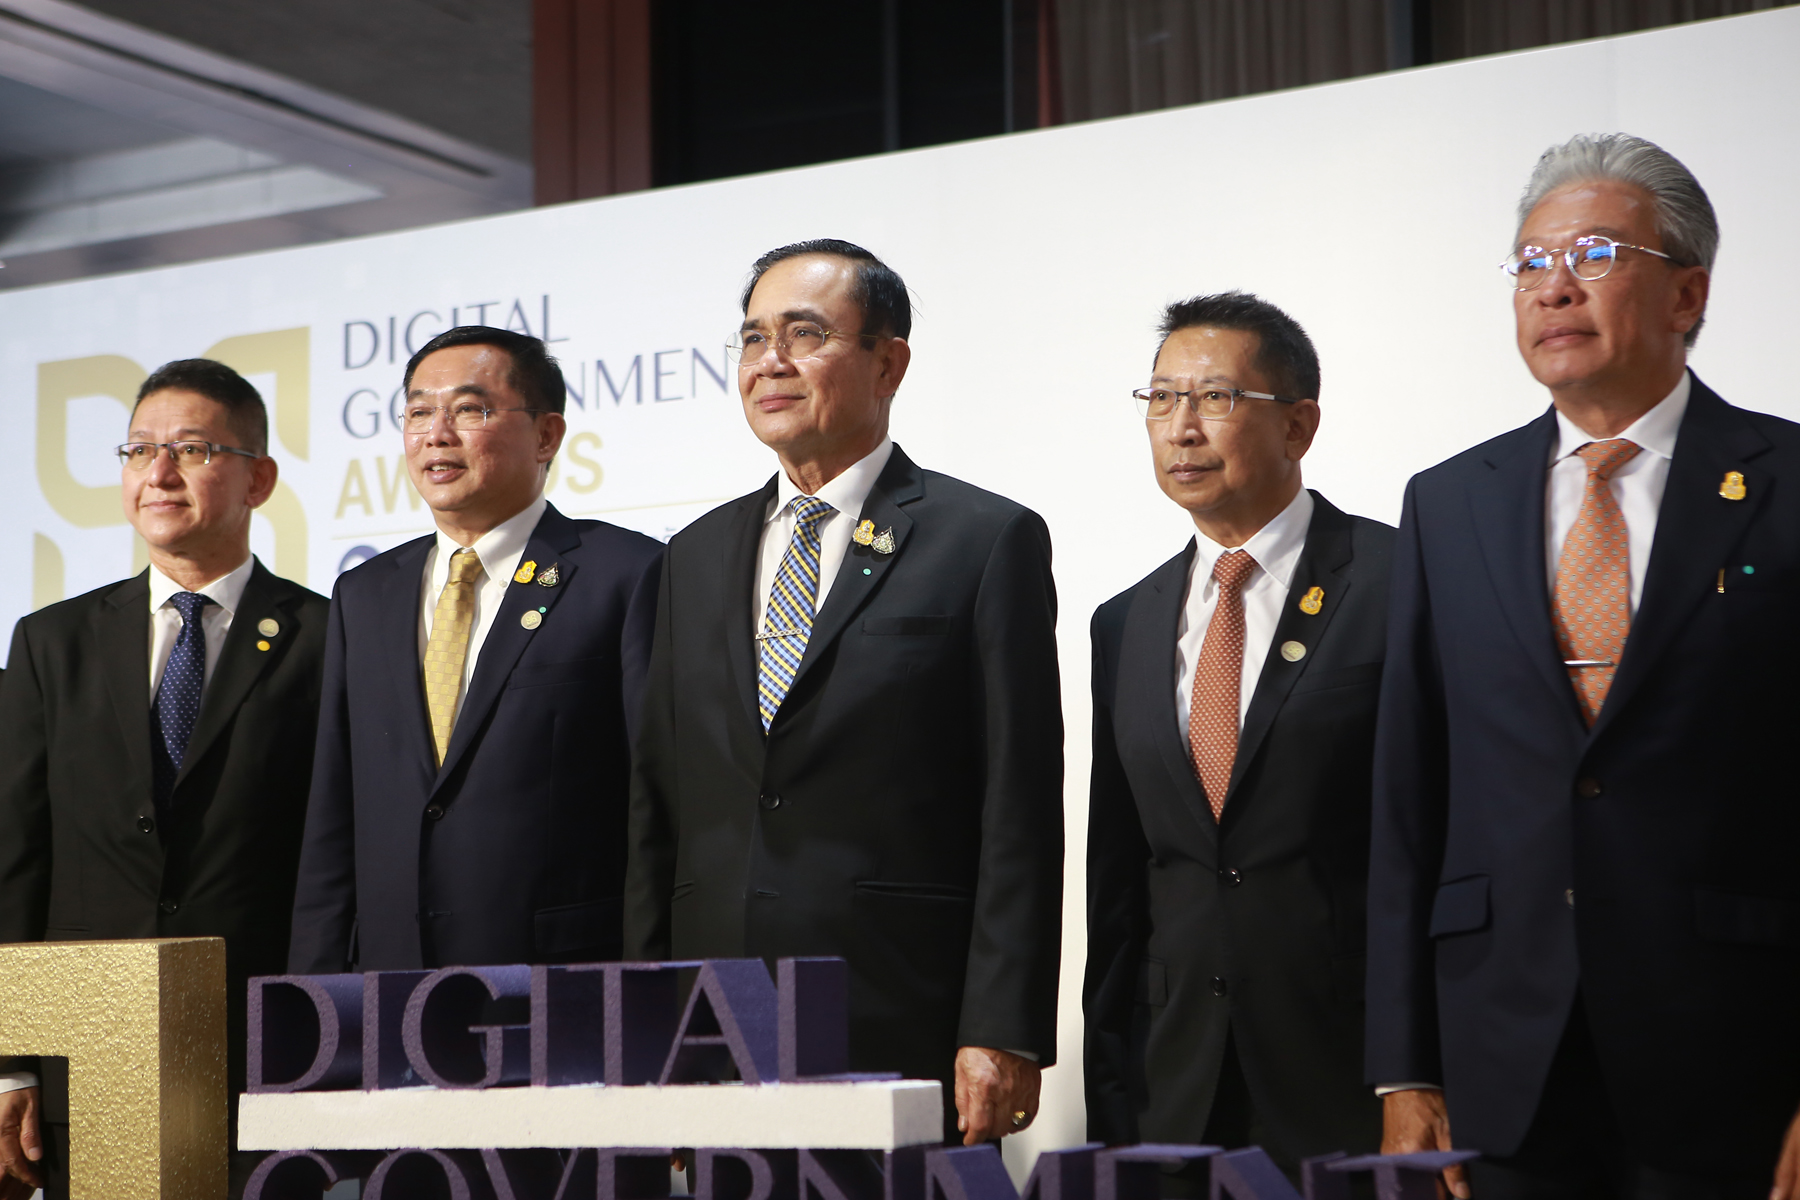 นายกรัฐมนตรีมอบรางวัล ‘Digital Government Awards 2020’ พร้อมผลักดันทุกหน่วยงานมุ่งสู่รัฐบาลดิจิทัลที่เปิดเผย เชื่อมโยง และร่วมกันสร้างบริการที่มีคุณค่าให้ประชาชน